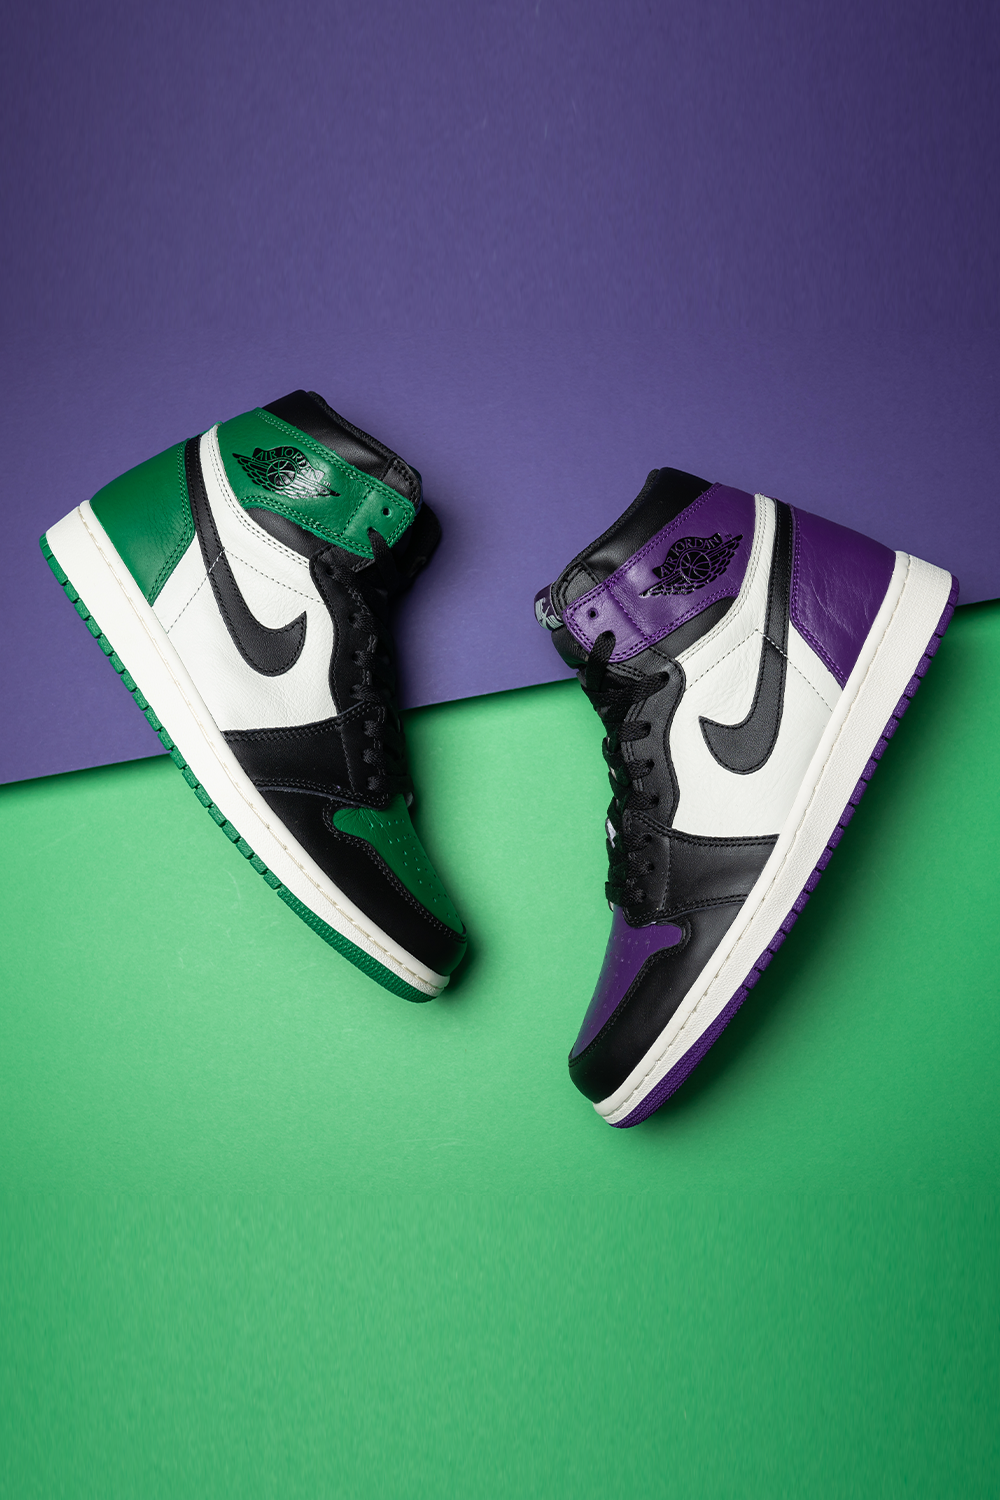 green and purple air jordan 1s